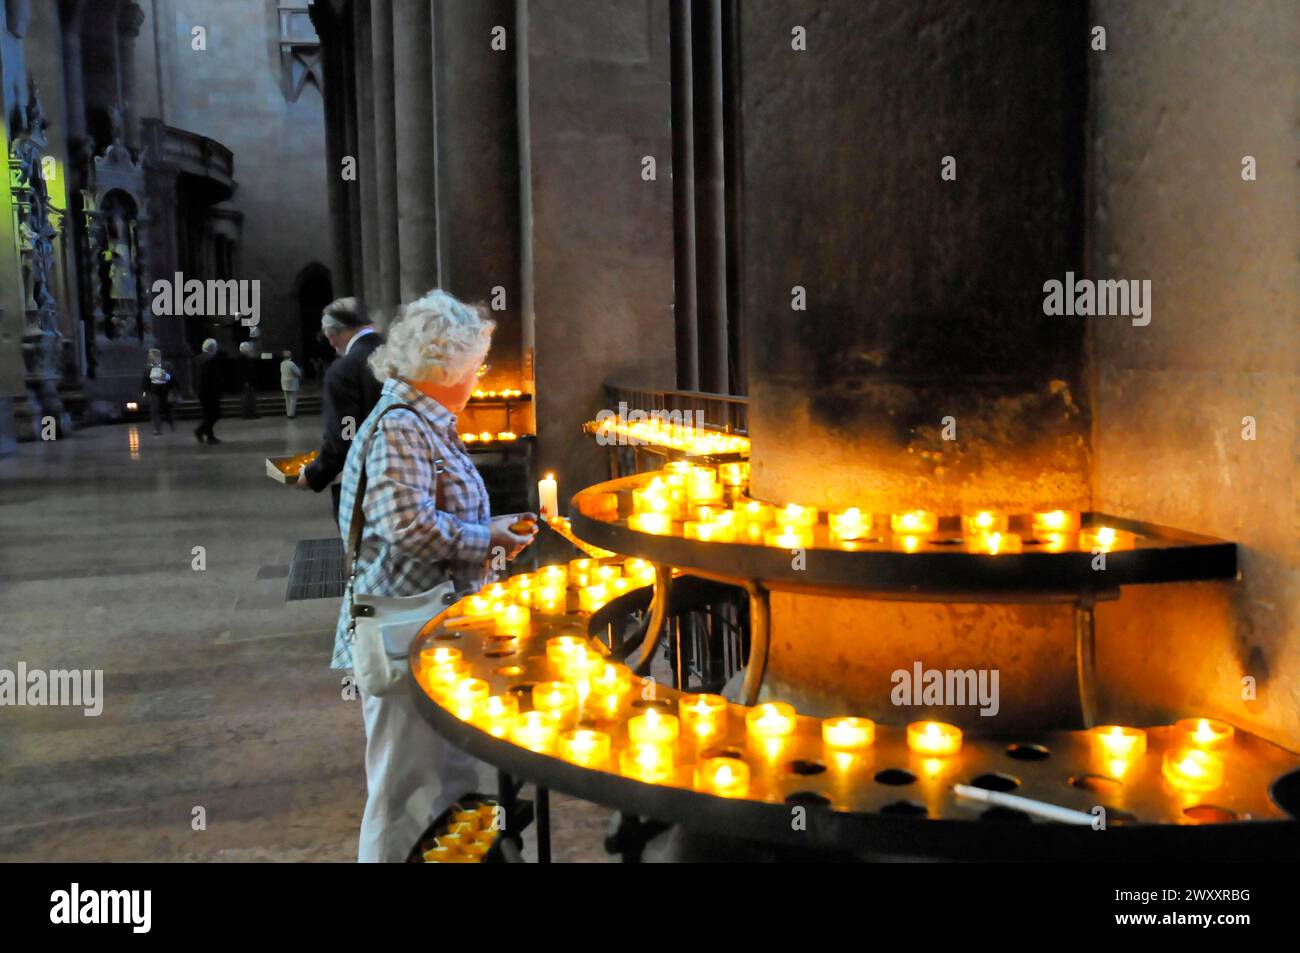 La Cattedrale alta di Magonza, i fedeli illuminano le candele per una preghiera silenziosa in un momento devozionale, Magonza, Renania-Palatinato, Germania Foto Stock